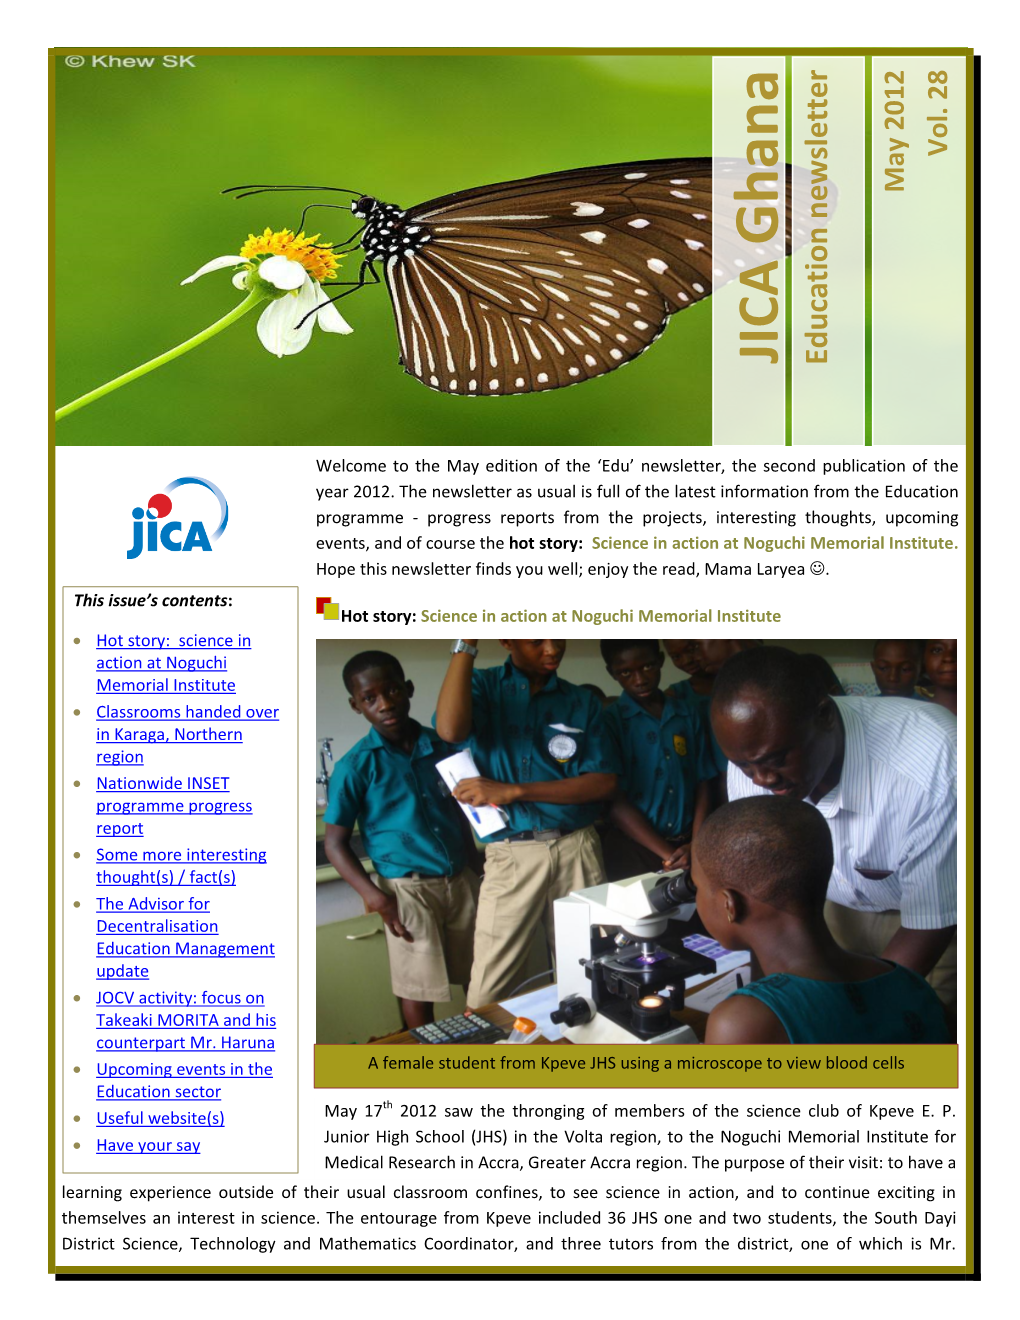 JICA Ghana Education Newsletter